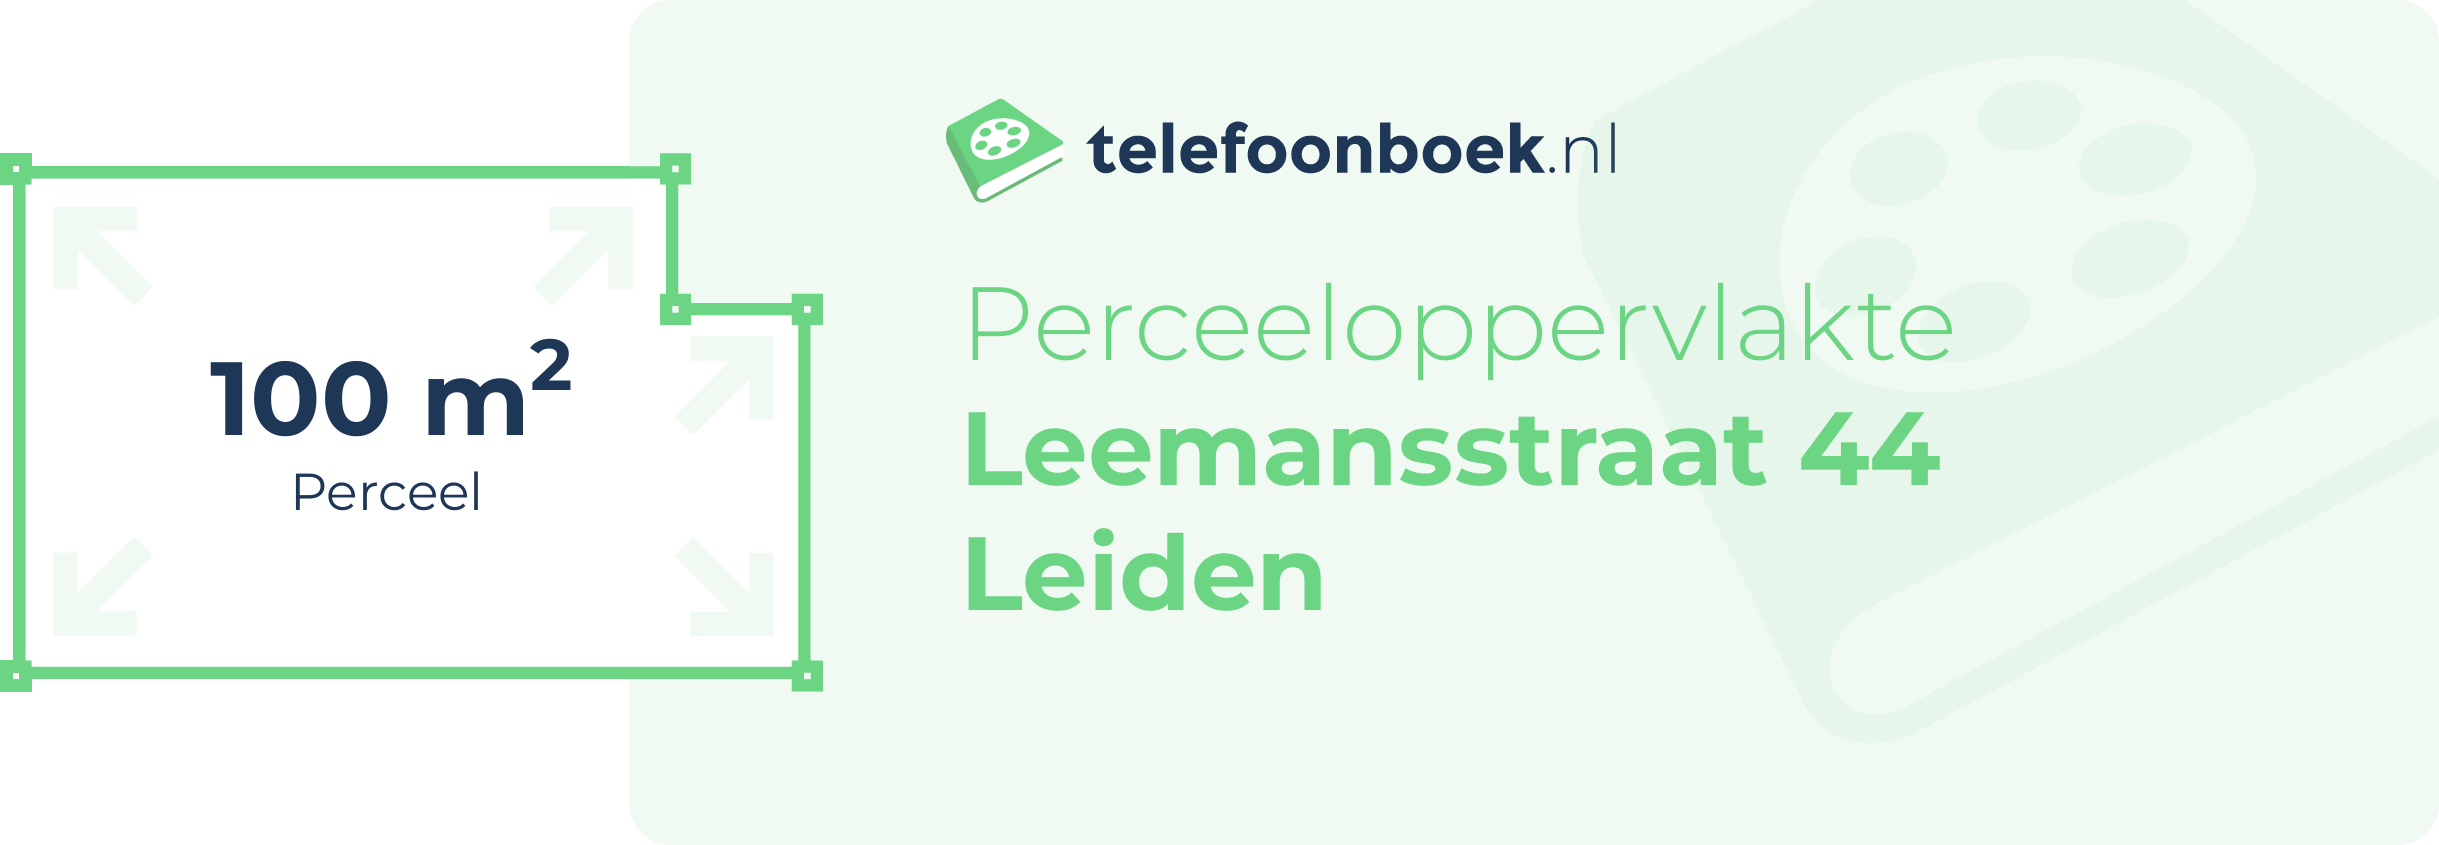 Perceeloppervlakte Leemansstraat 44 Leiden